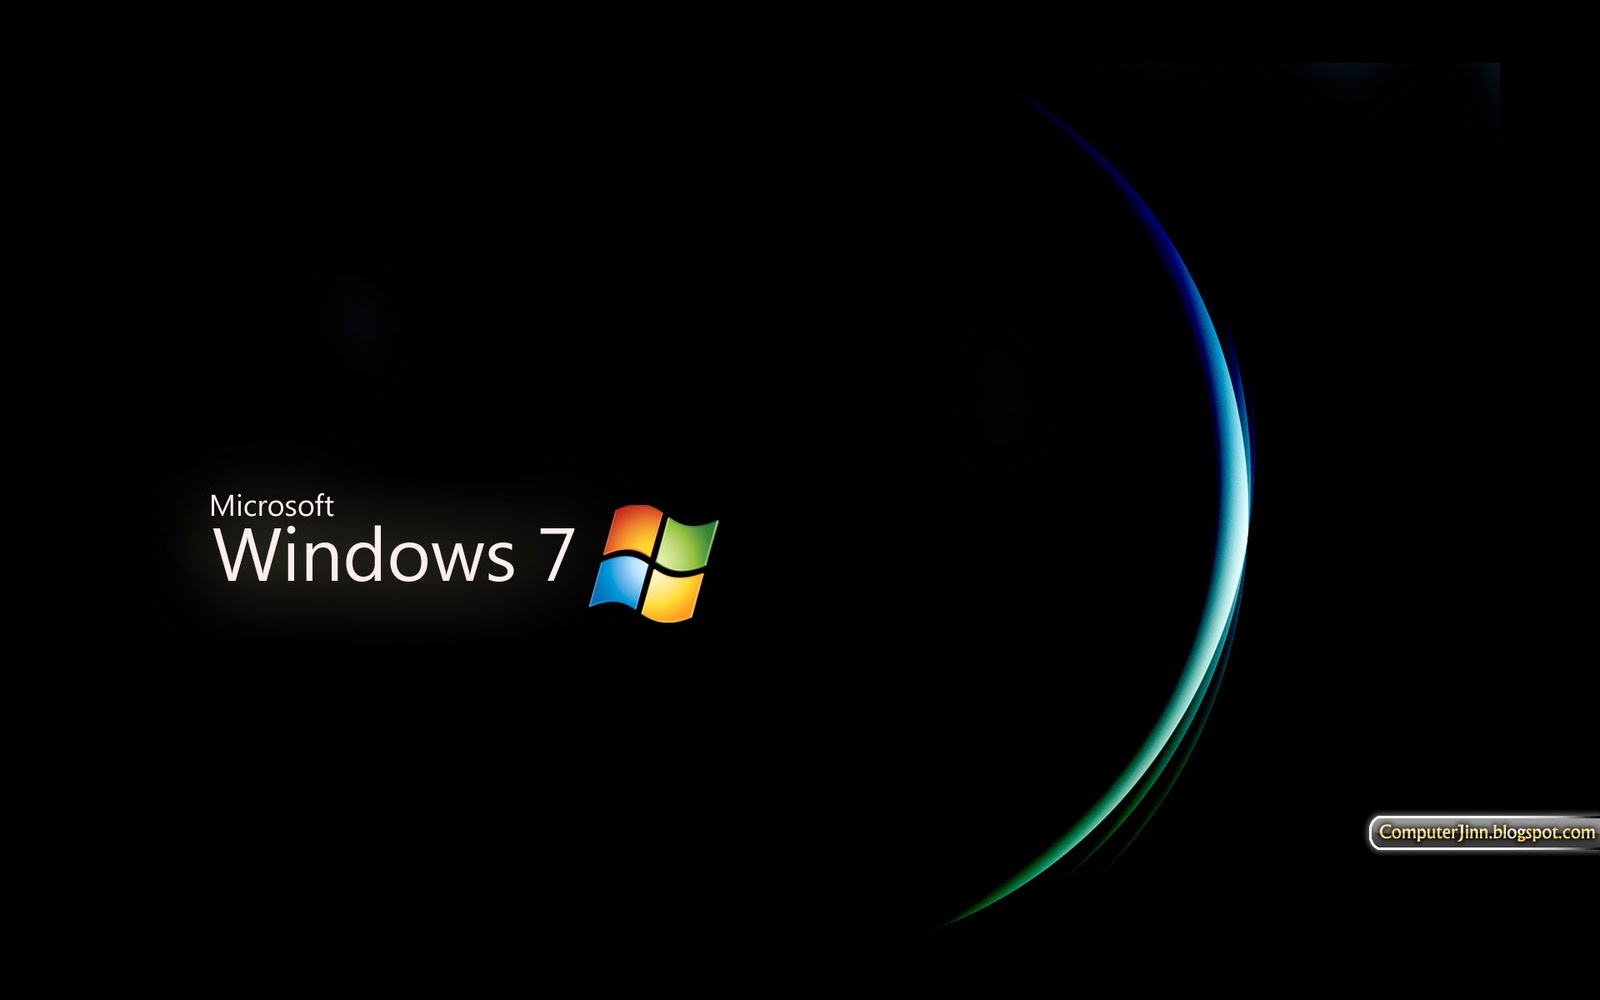 Bạn đang tìm kiếm một bộ sưu tập hình nền windows 7 đậm chất bí ẩn? Hãy tải ngay hình nền windows 7 đen và tối miễn phí về máy tính của bạn để có những trải nghiệm thú vị.